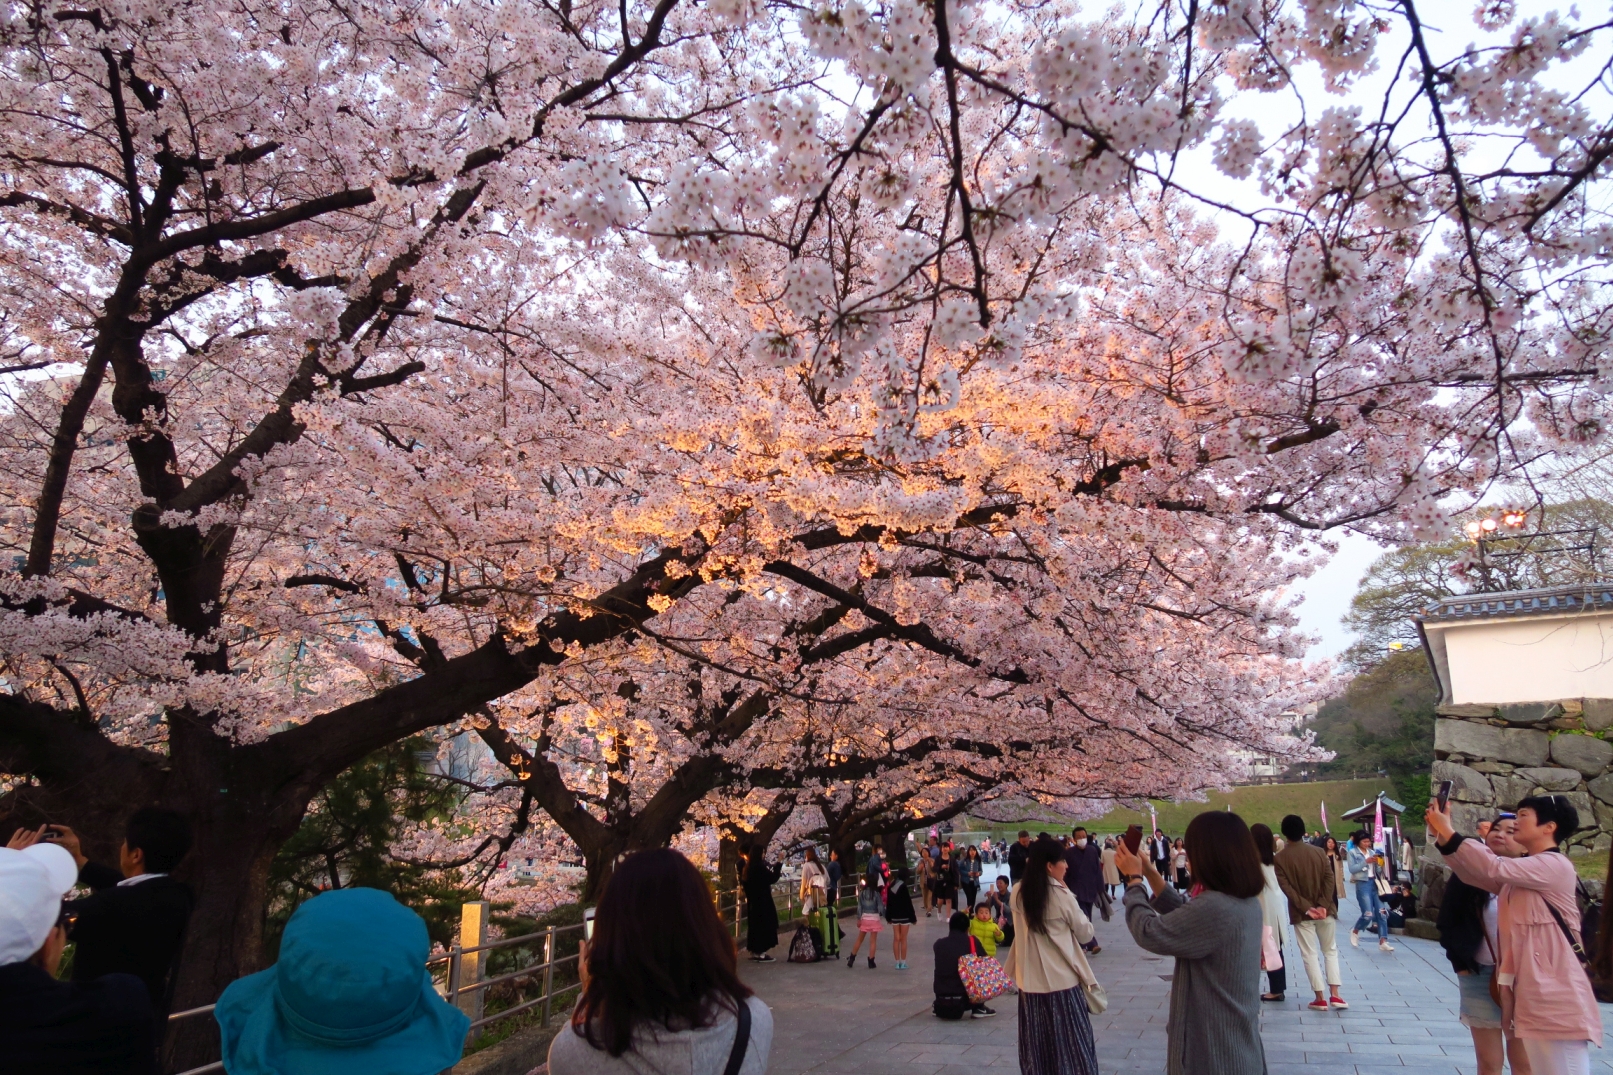 كونا اليابانيون يحتفلون بمشاهدة زهرة الكرز ساكورا في فصل